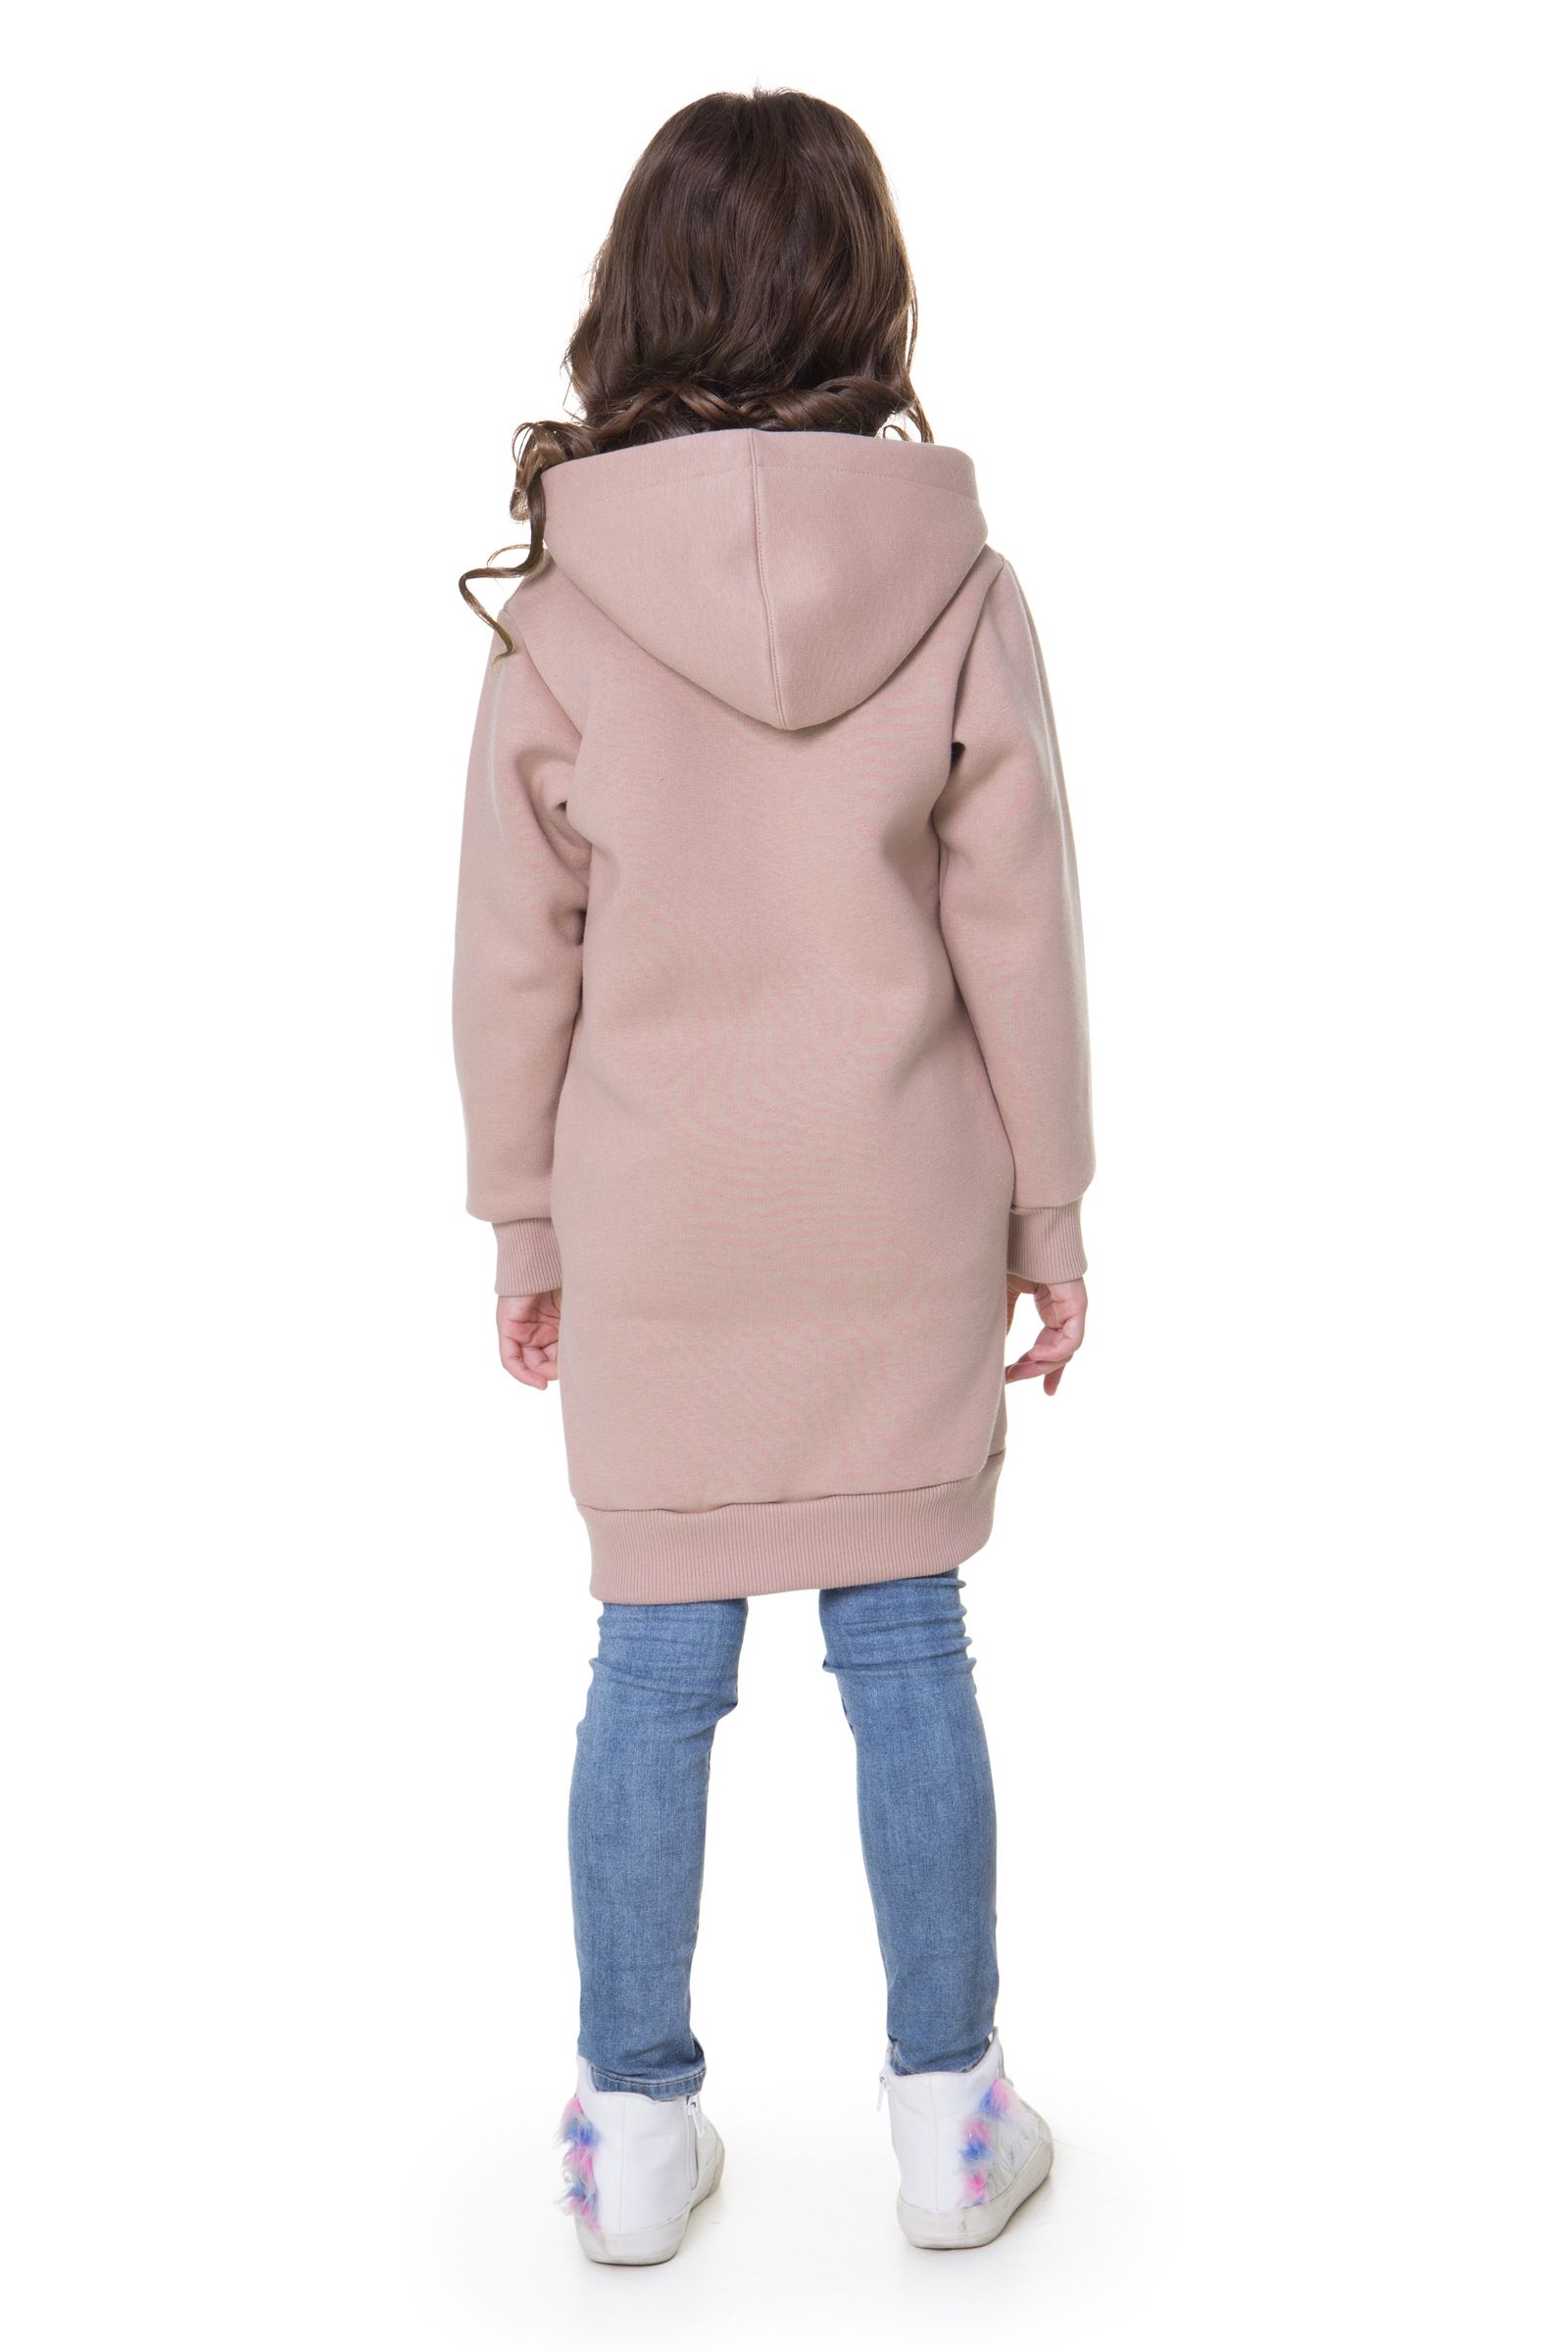 Платье-ПЛ06-3355 оптом от производителя детской одежды 'Алёна'